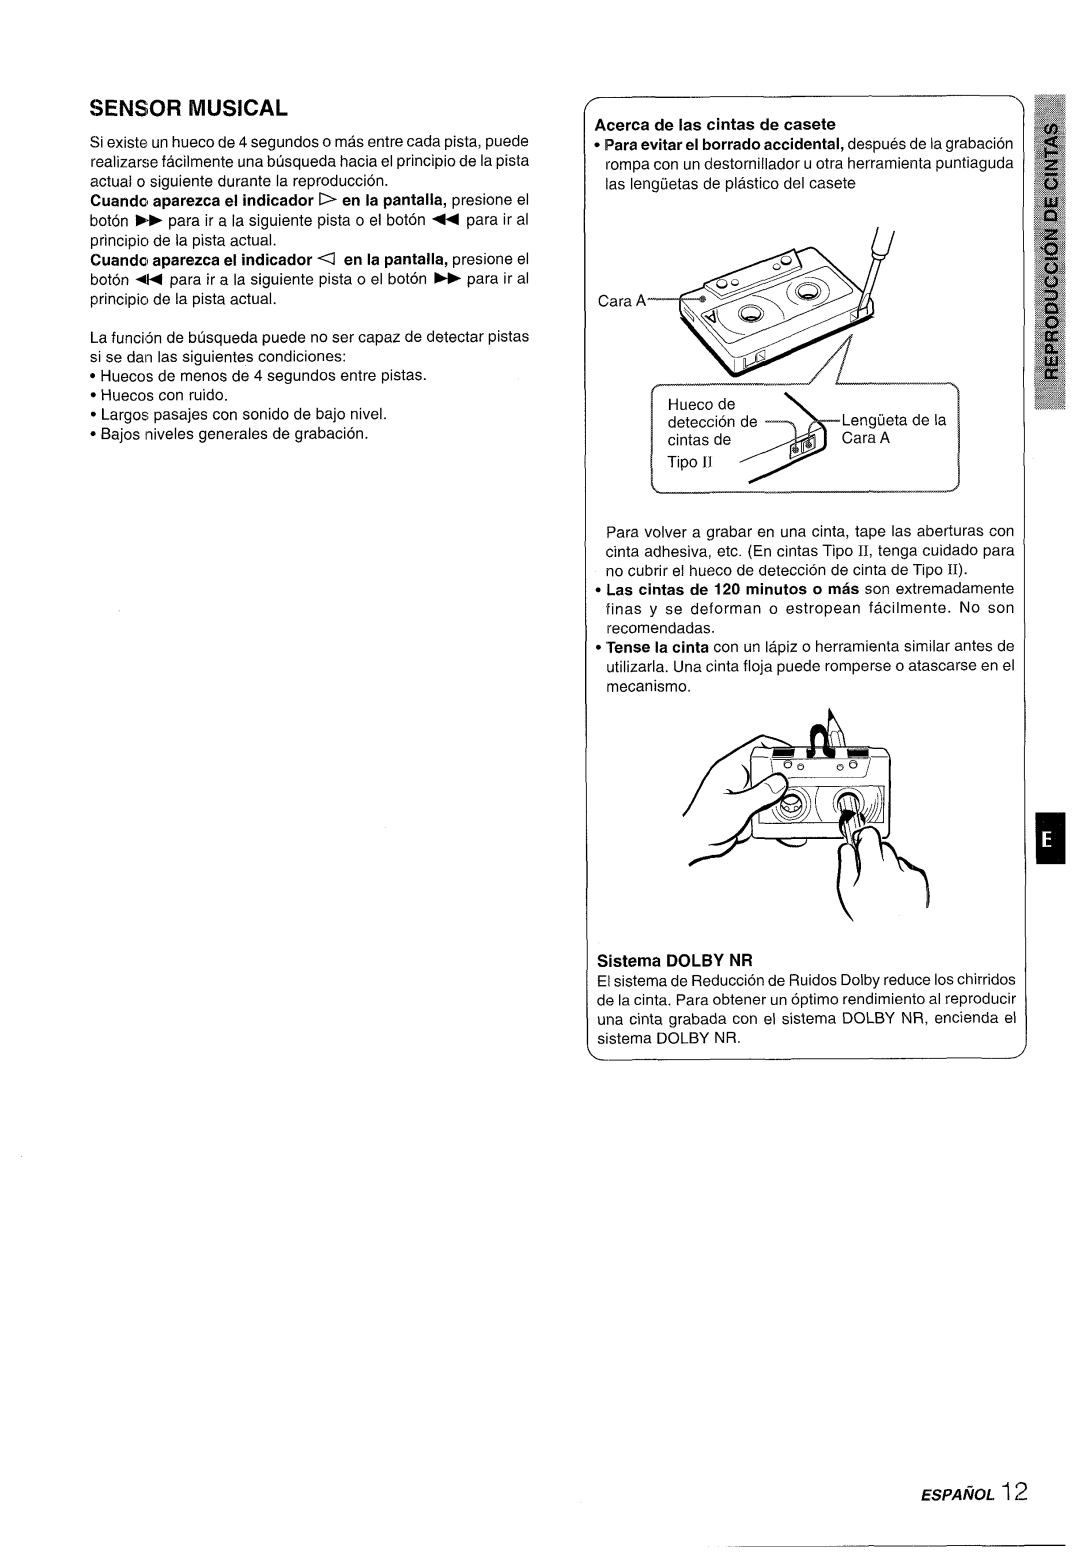 Aiwa XR-M35 Sensor Musical, Cuanda, aparezca e! indicador D en la pantalla, presione el, Acerca de Ias cintas de casete 